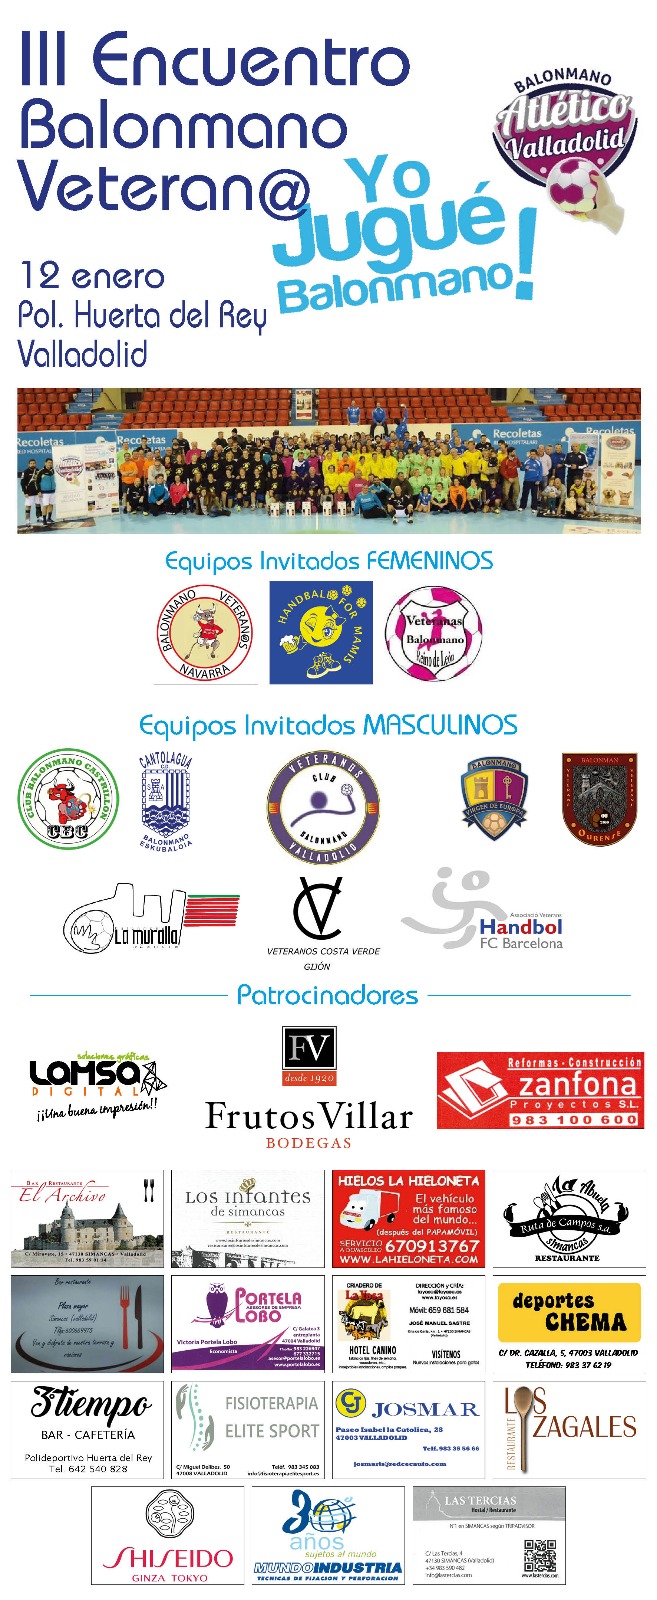 La tercera edición del Encuentro de Balonmano Veterano Yo Jugué reúne en Huerta del Rey a 200 participantes y 13 equipos | Galería 1 / 2